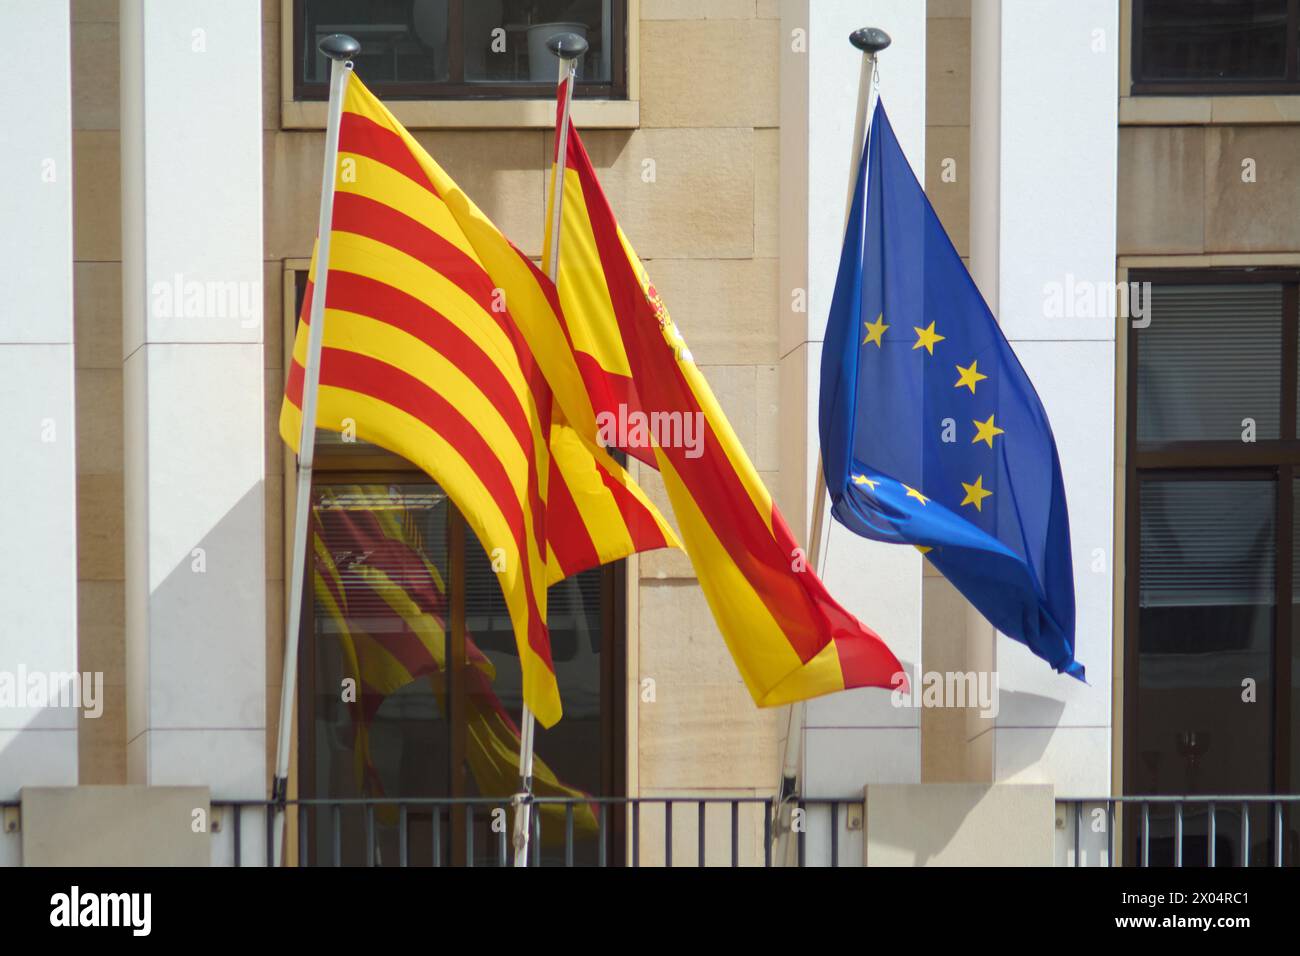 Des drapeaux espagnols, catalans et européens vibrants flottent ensemble, leurs couleurs témoignent de la riche tapisserie culturelle et de l'histoire partagée. Banque D'Images